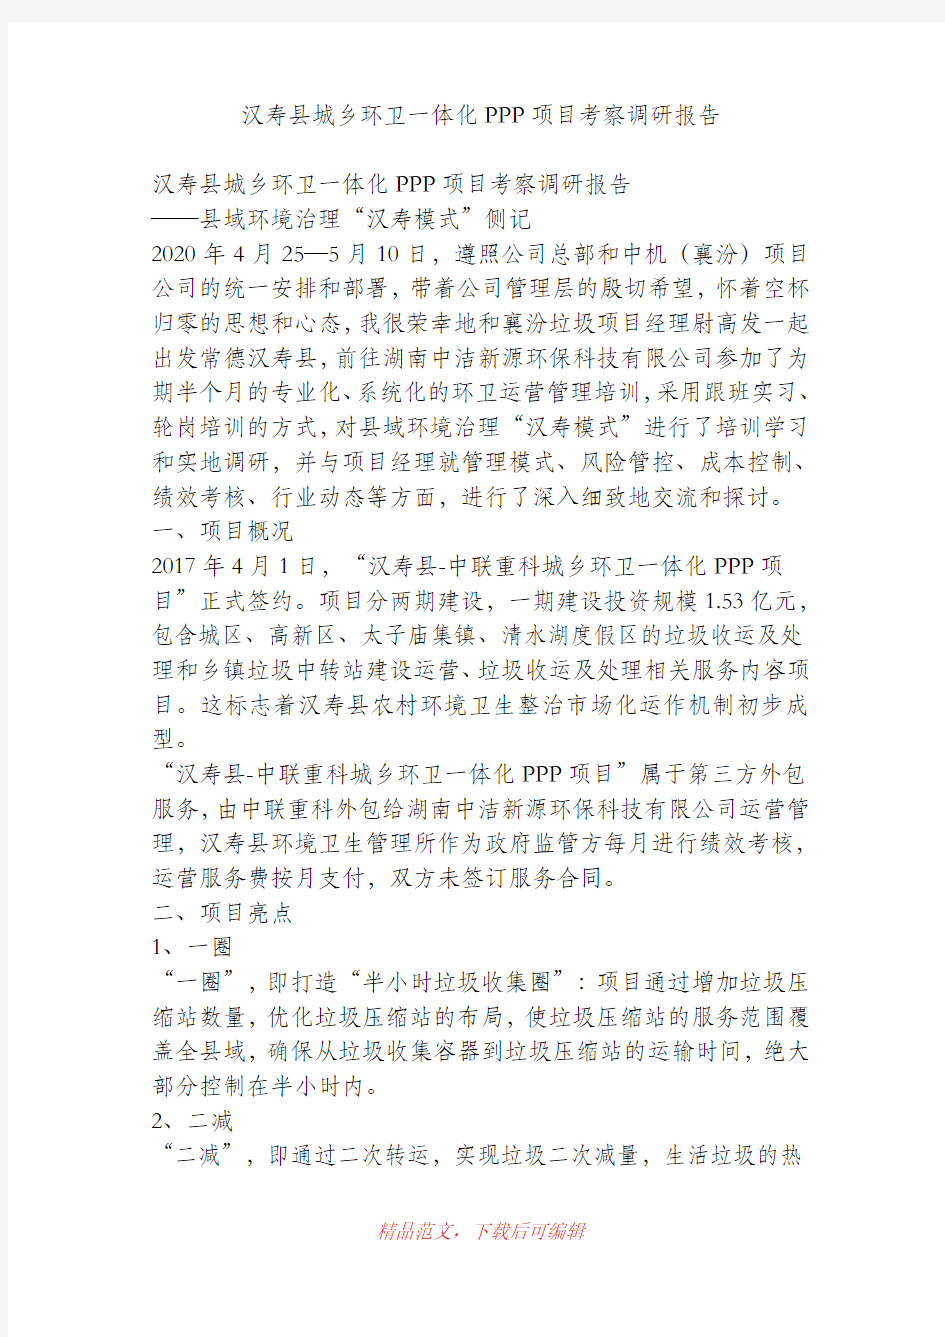 (最新)汉寿县城乡环卫一体化PPP项目考察调研报告